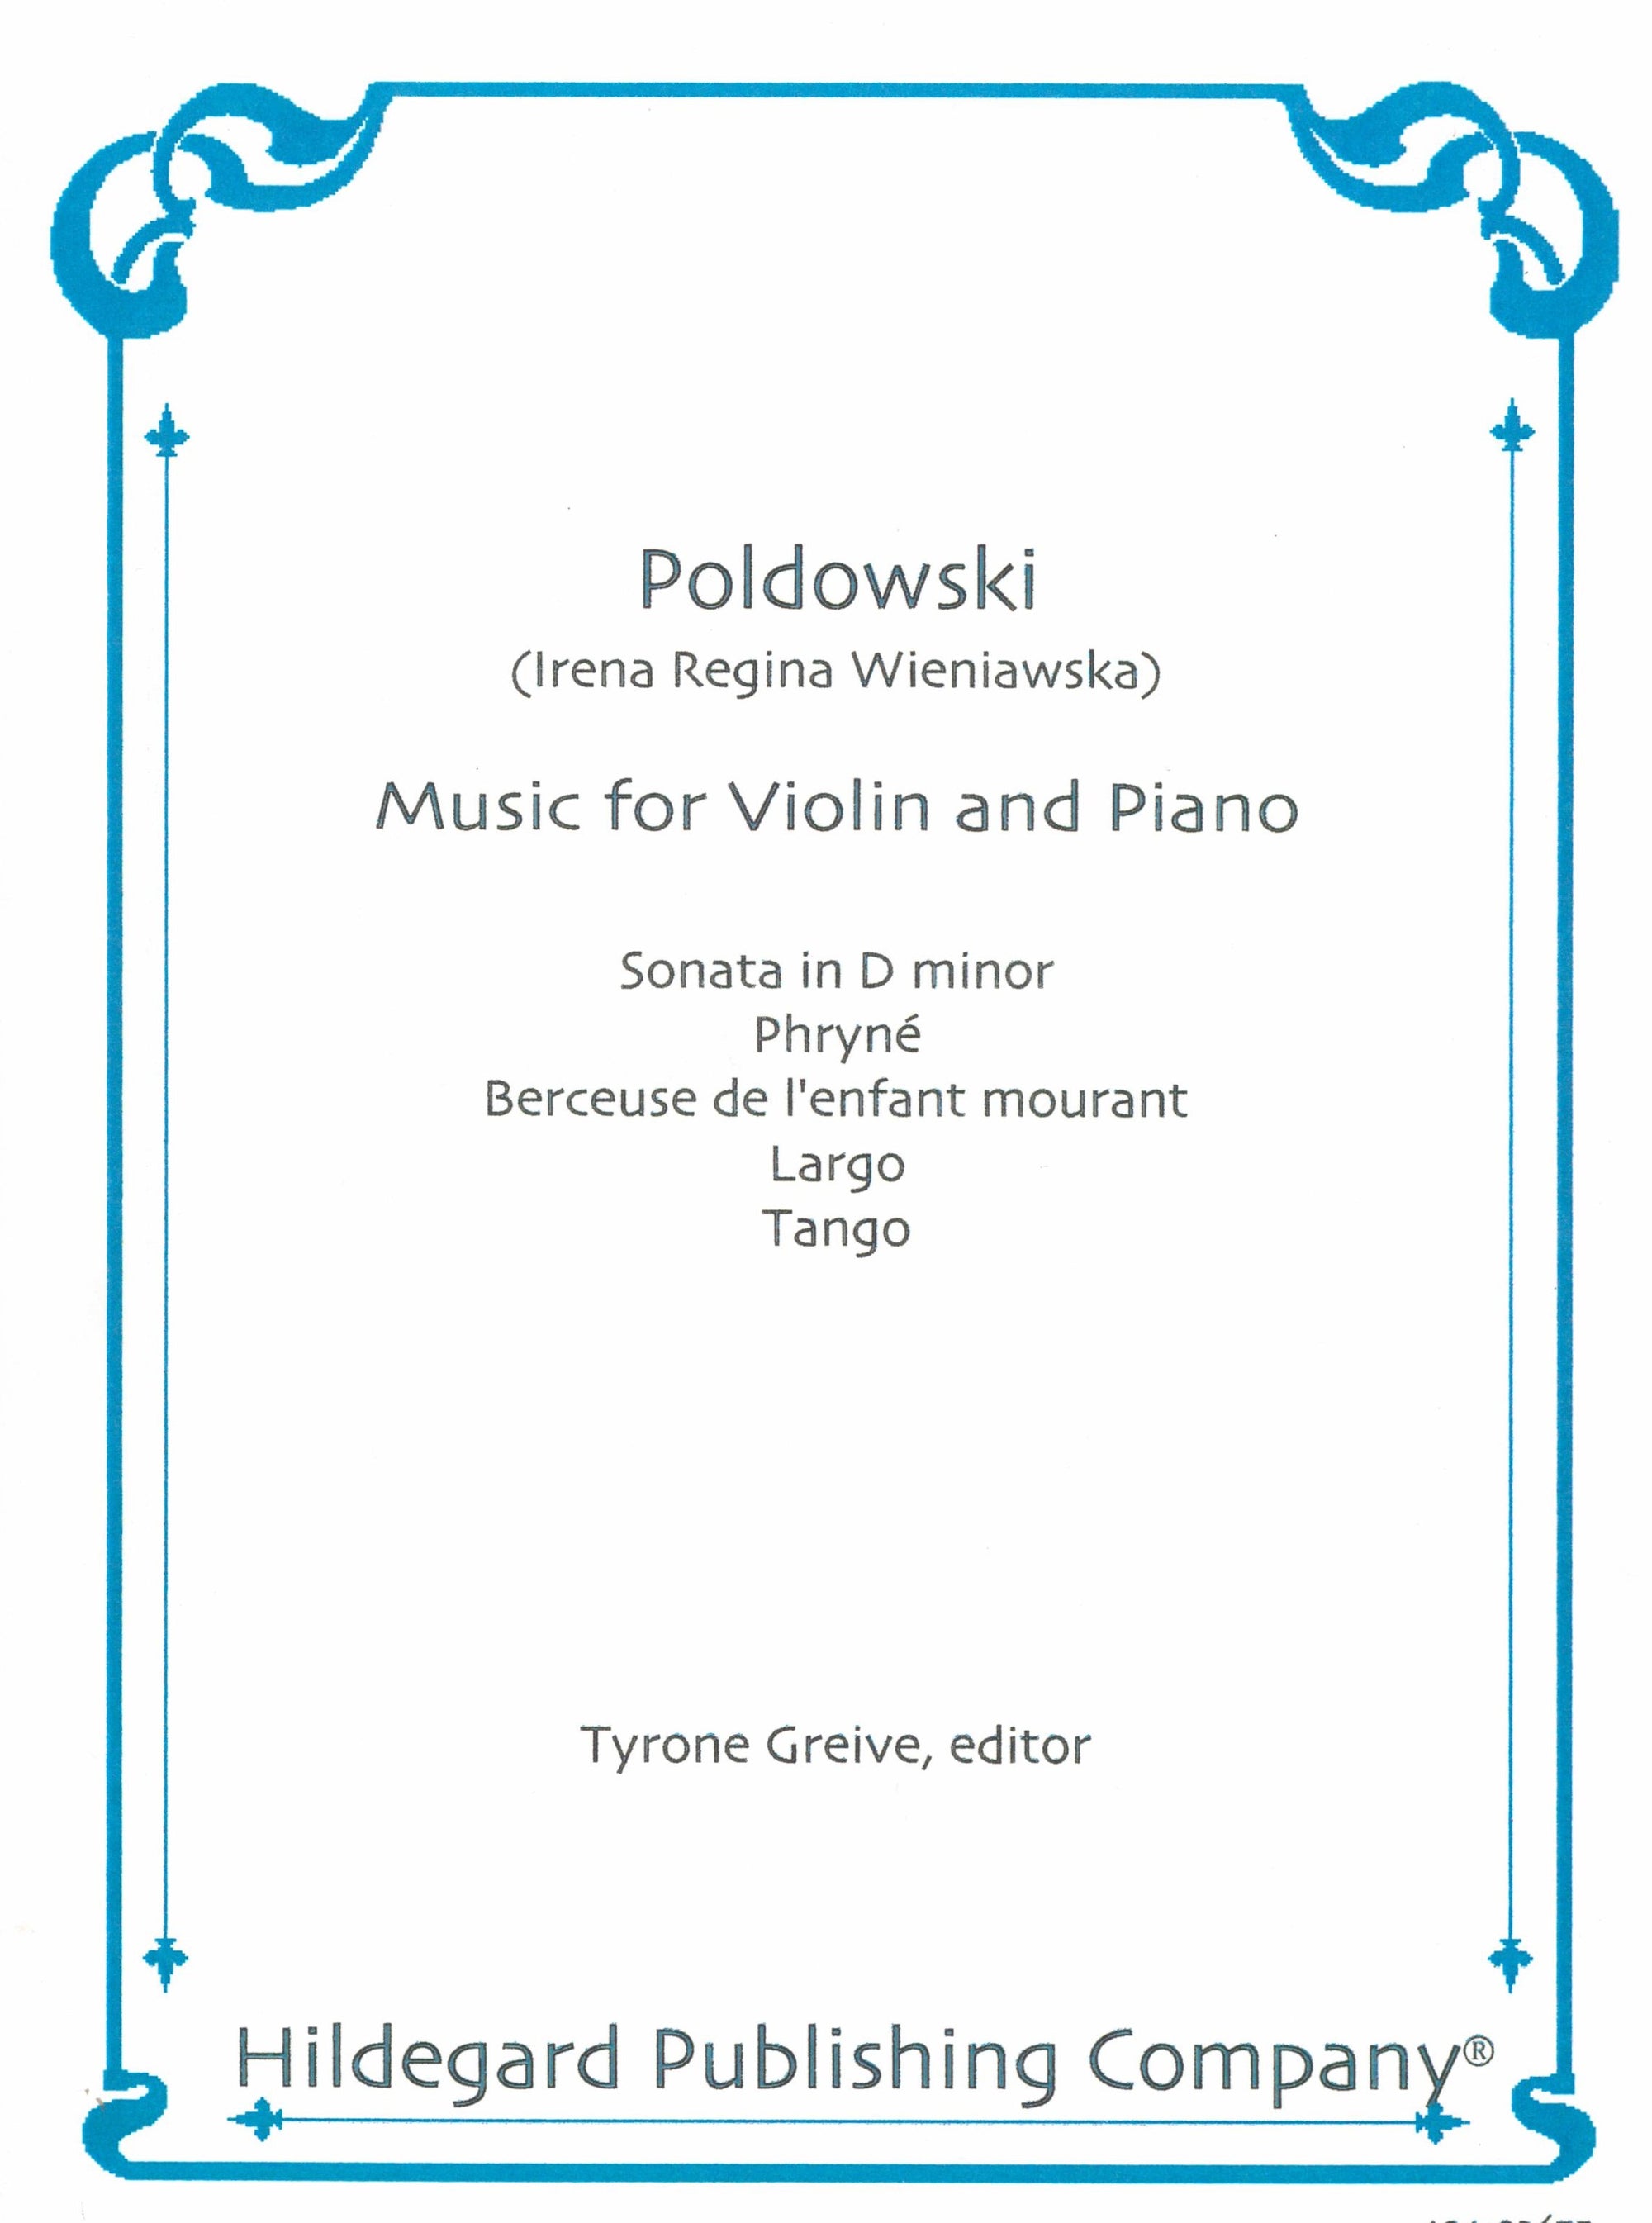 Poldowski: Music for Violin and Piano